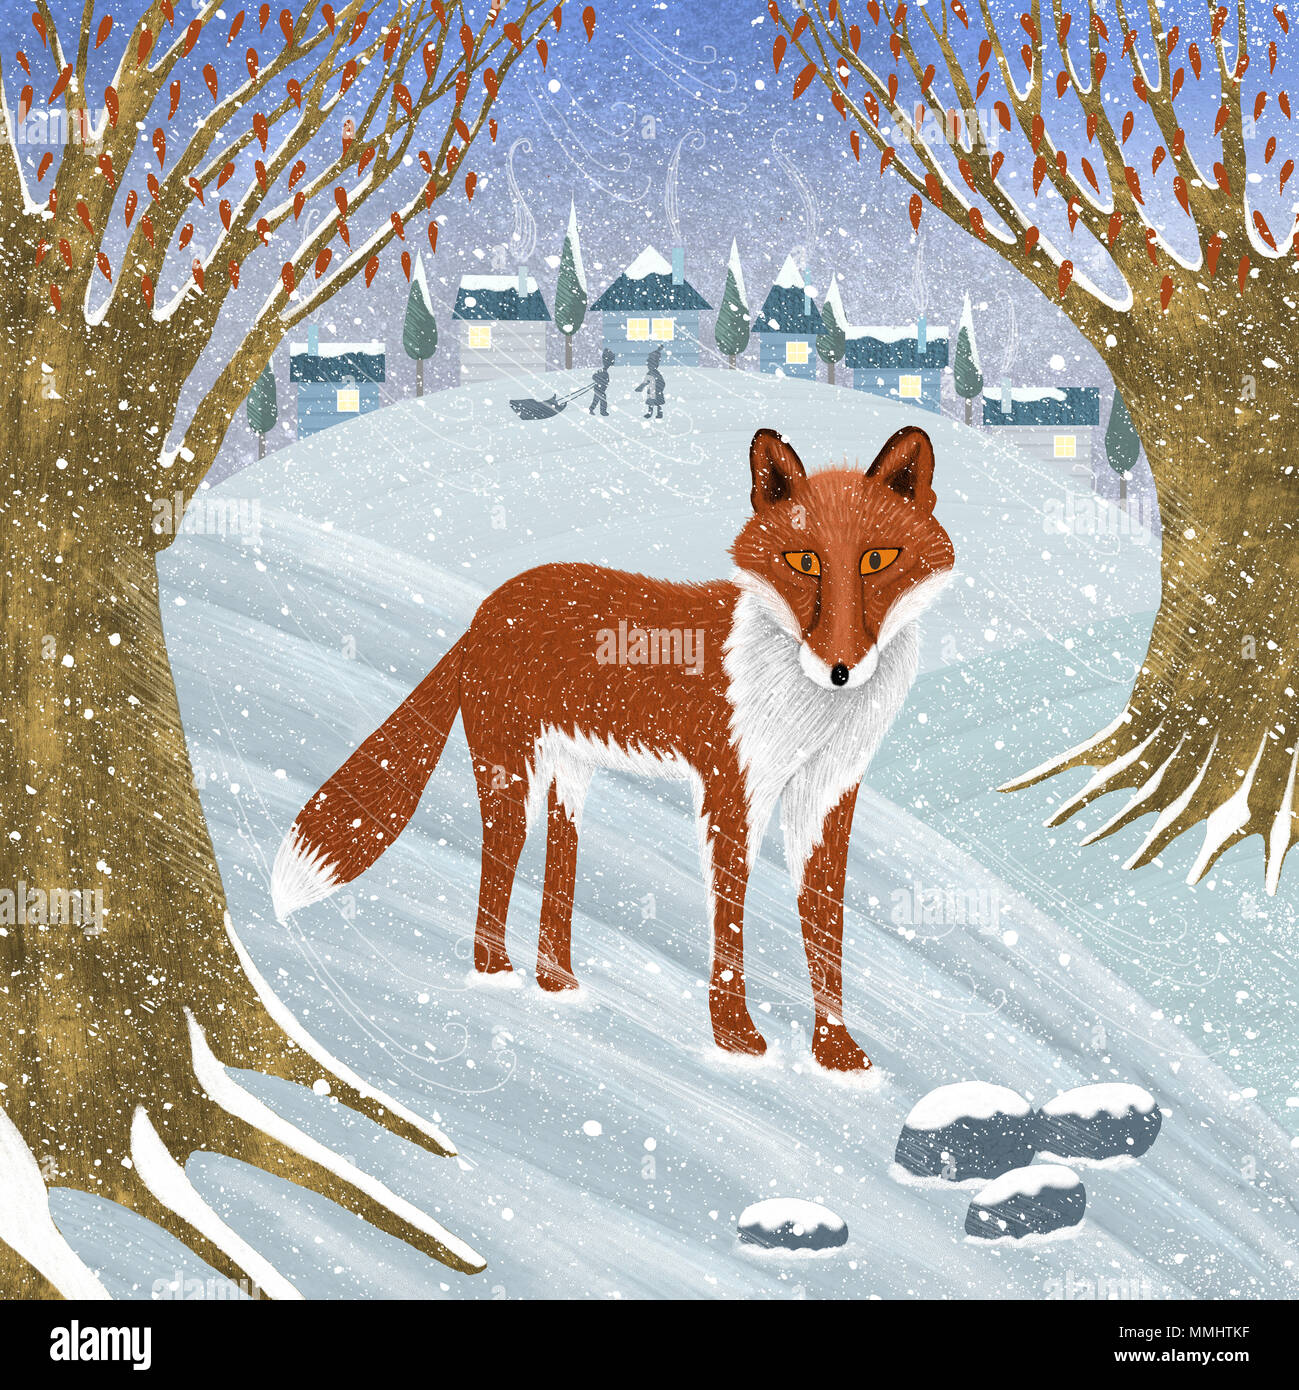 Une illustration d'un renard solitaire errant dans les bois à la campagne, pendant la saison d'hiver. Banque D'Images